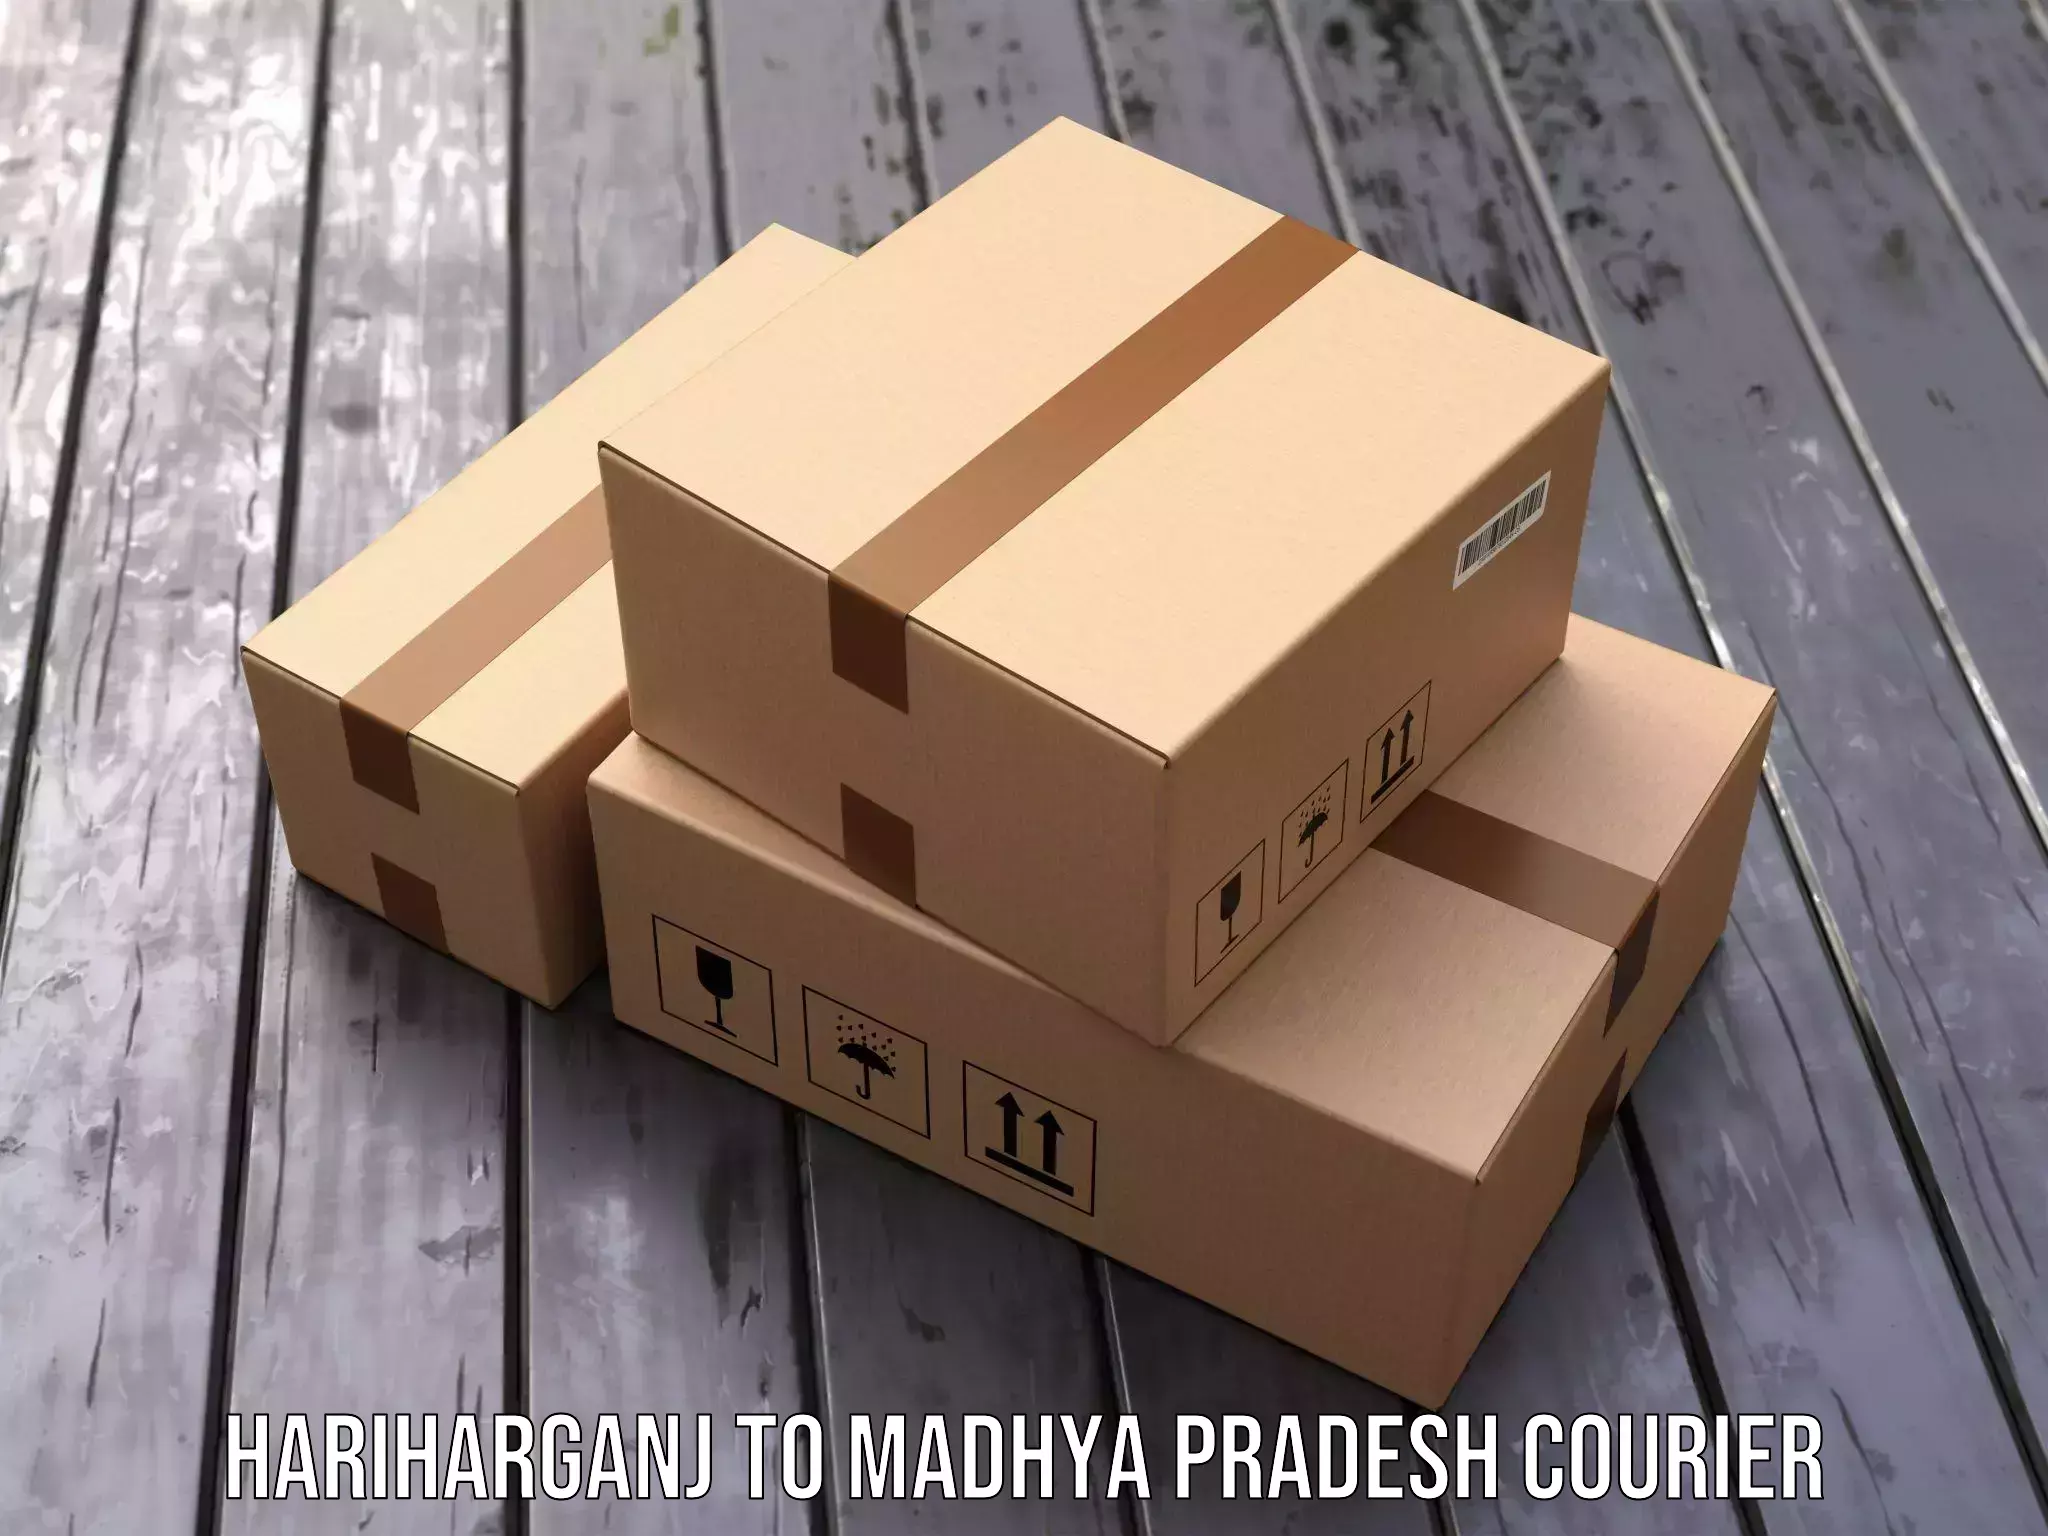 Enhanced tracking features Hariharganj to Mandla